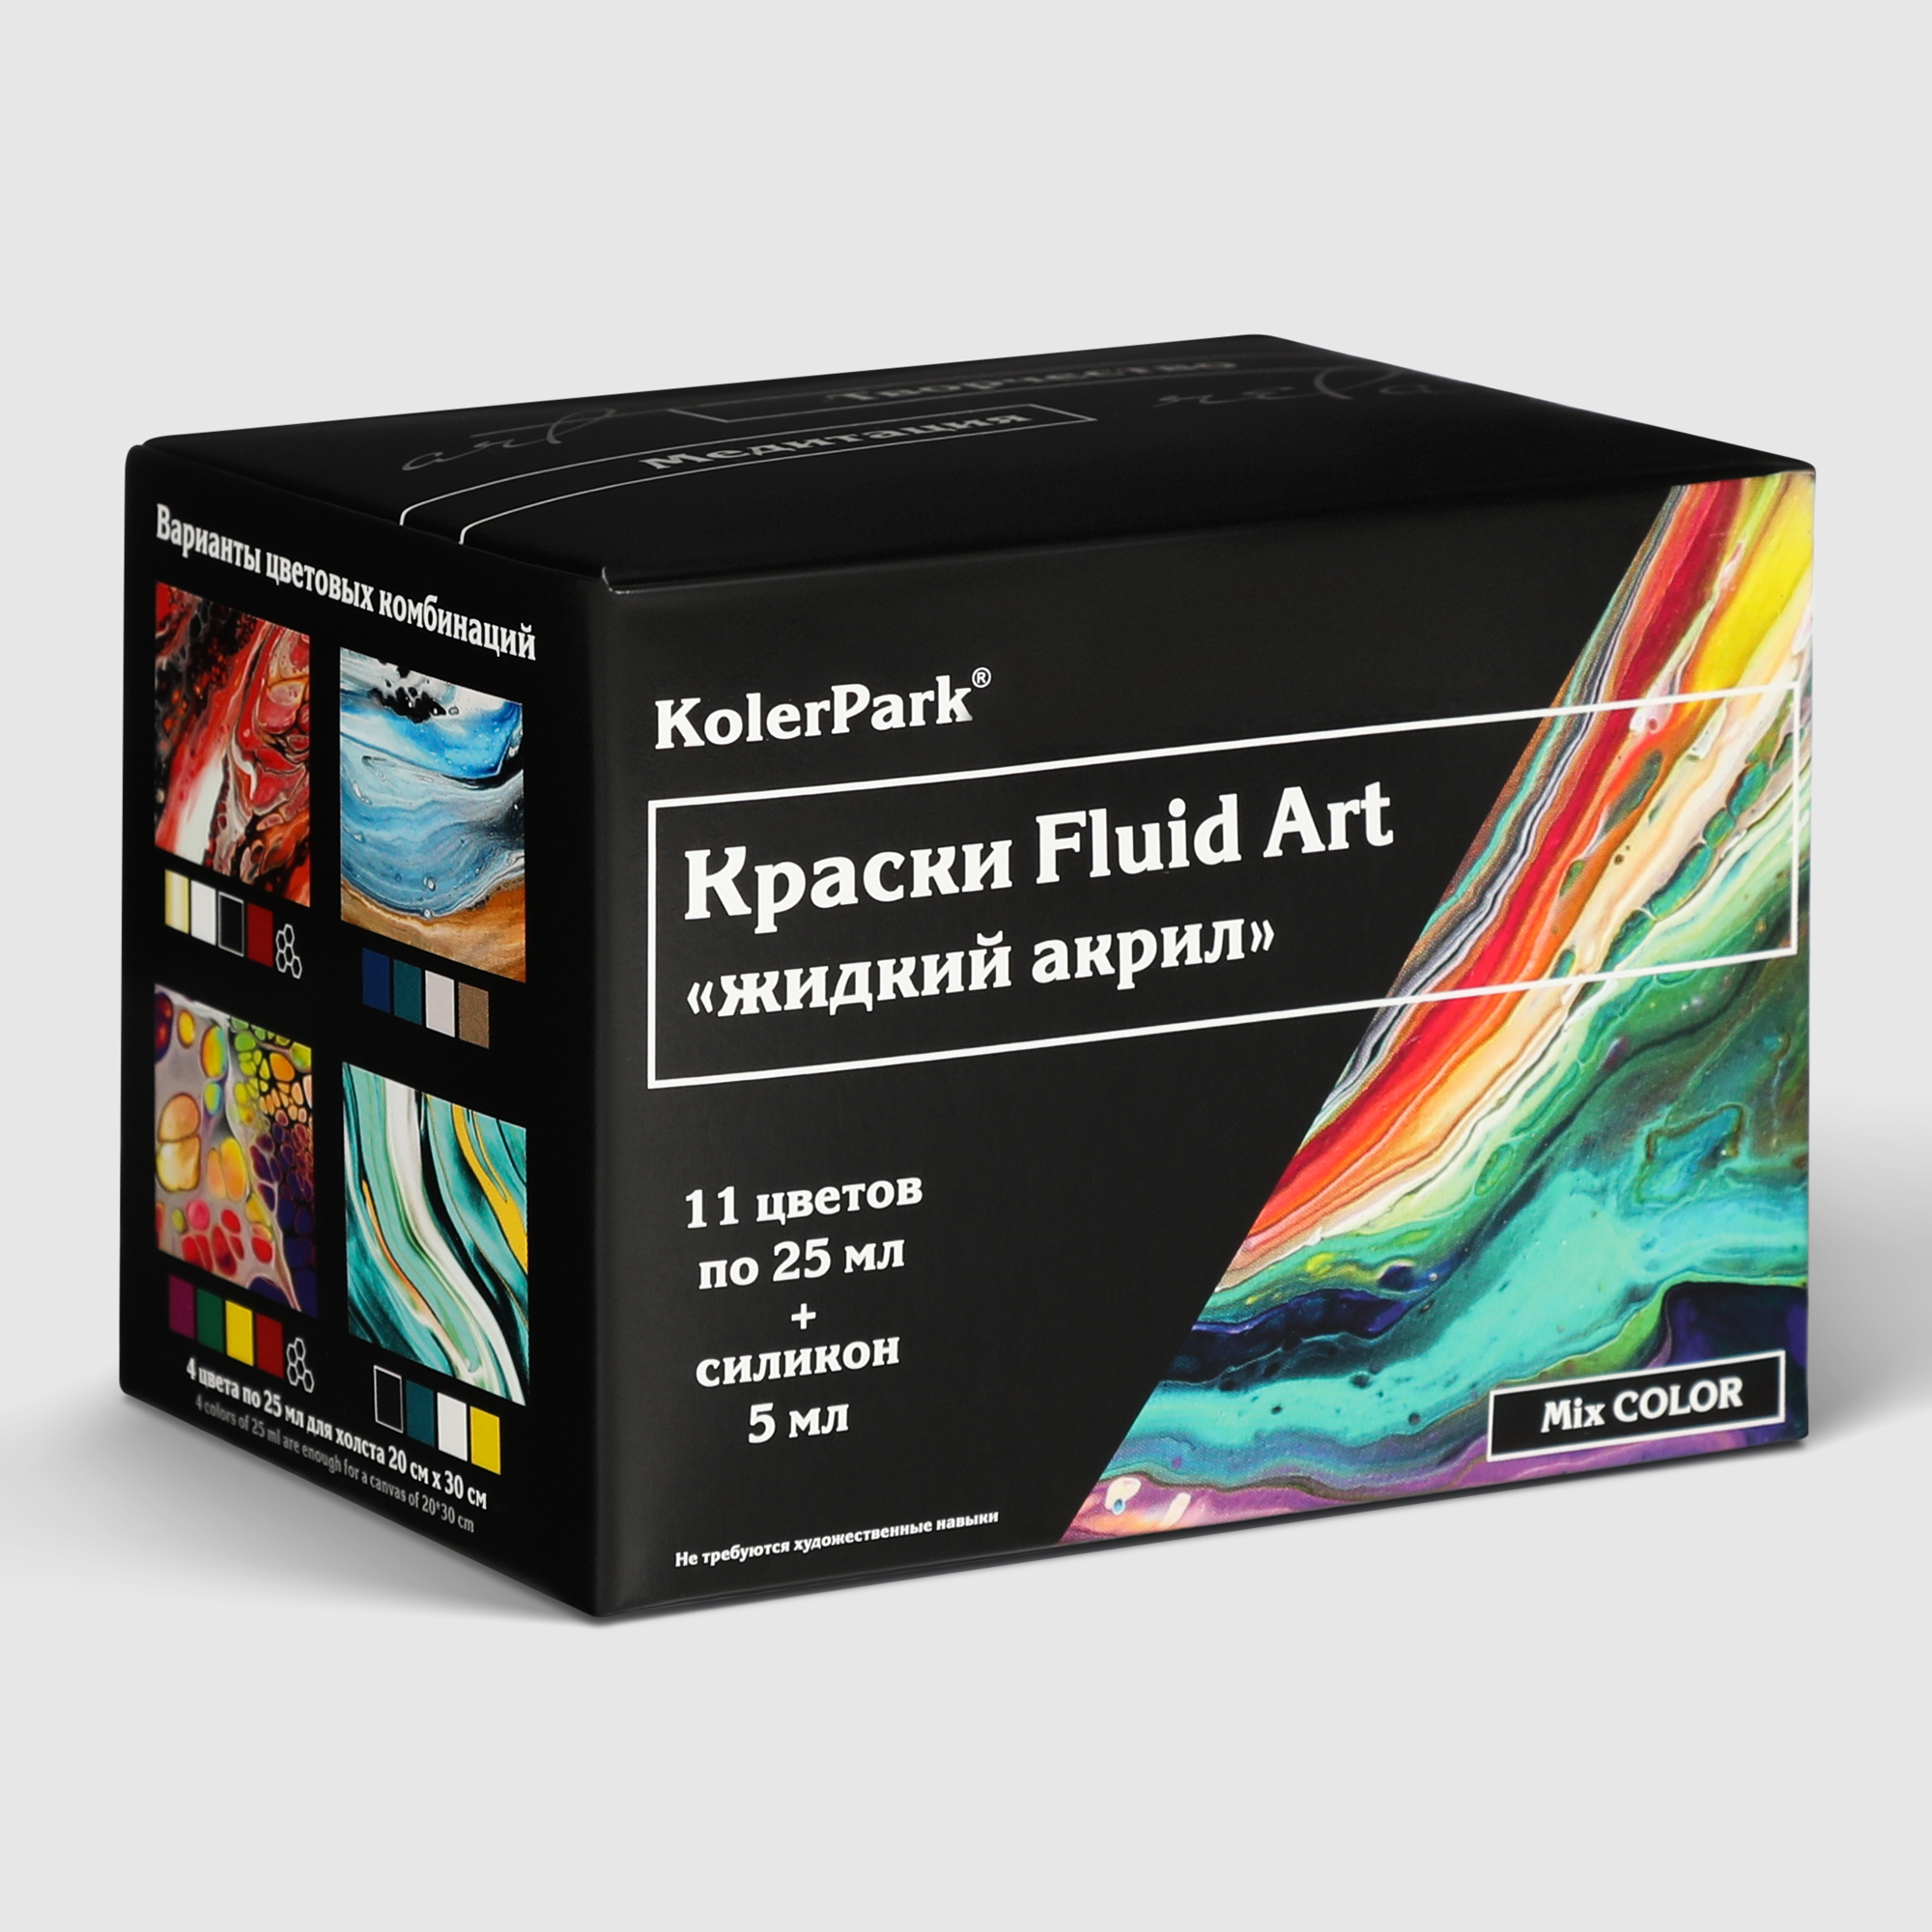 Где купить Набор красок KolerPark Fluid art mix color KolerPark 